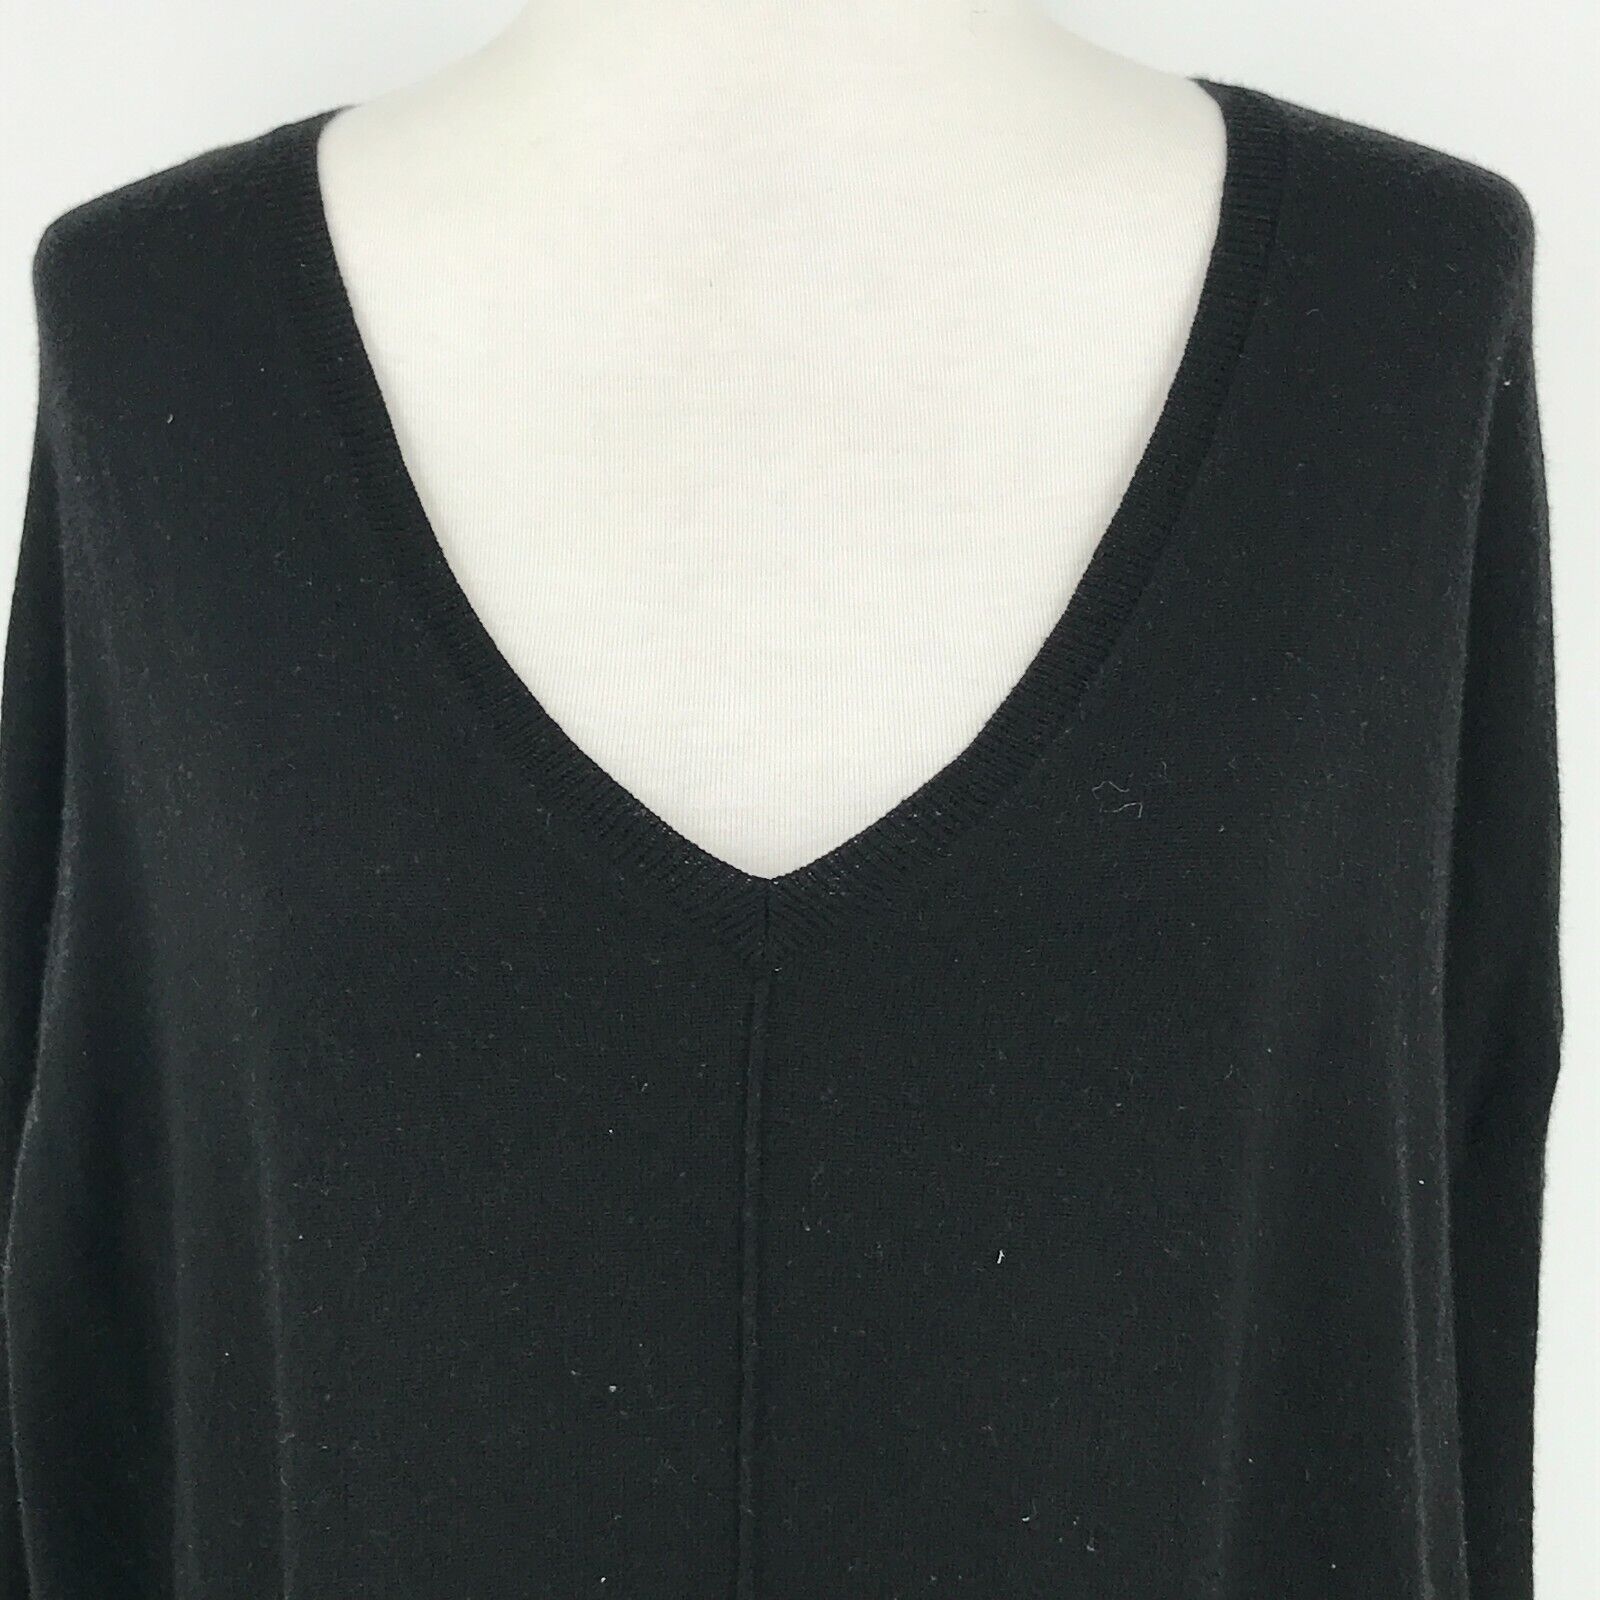 Trouve Sweater Womens Medium Black Cashmere Blend Lightweight Long Sleeve  Top